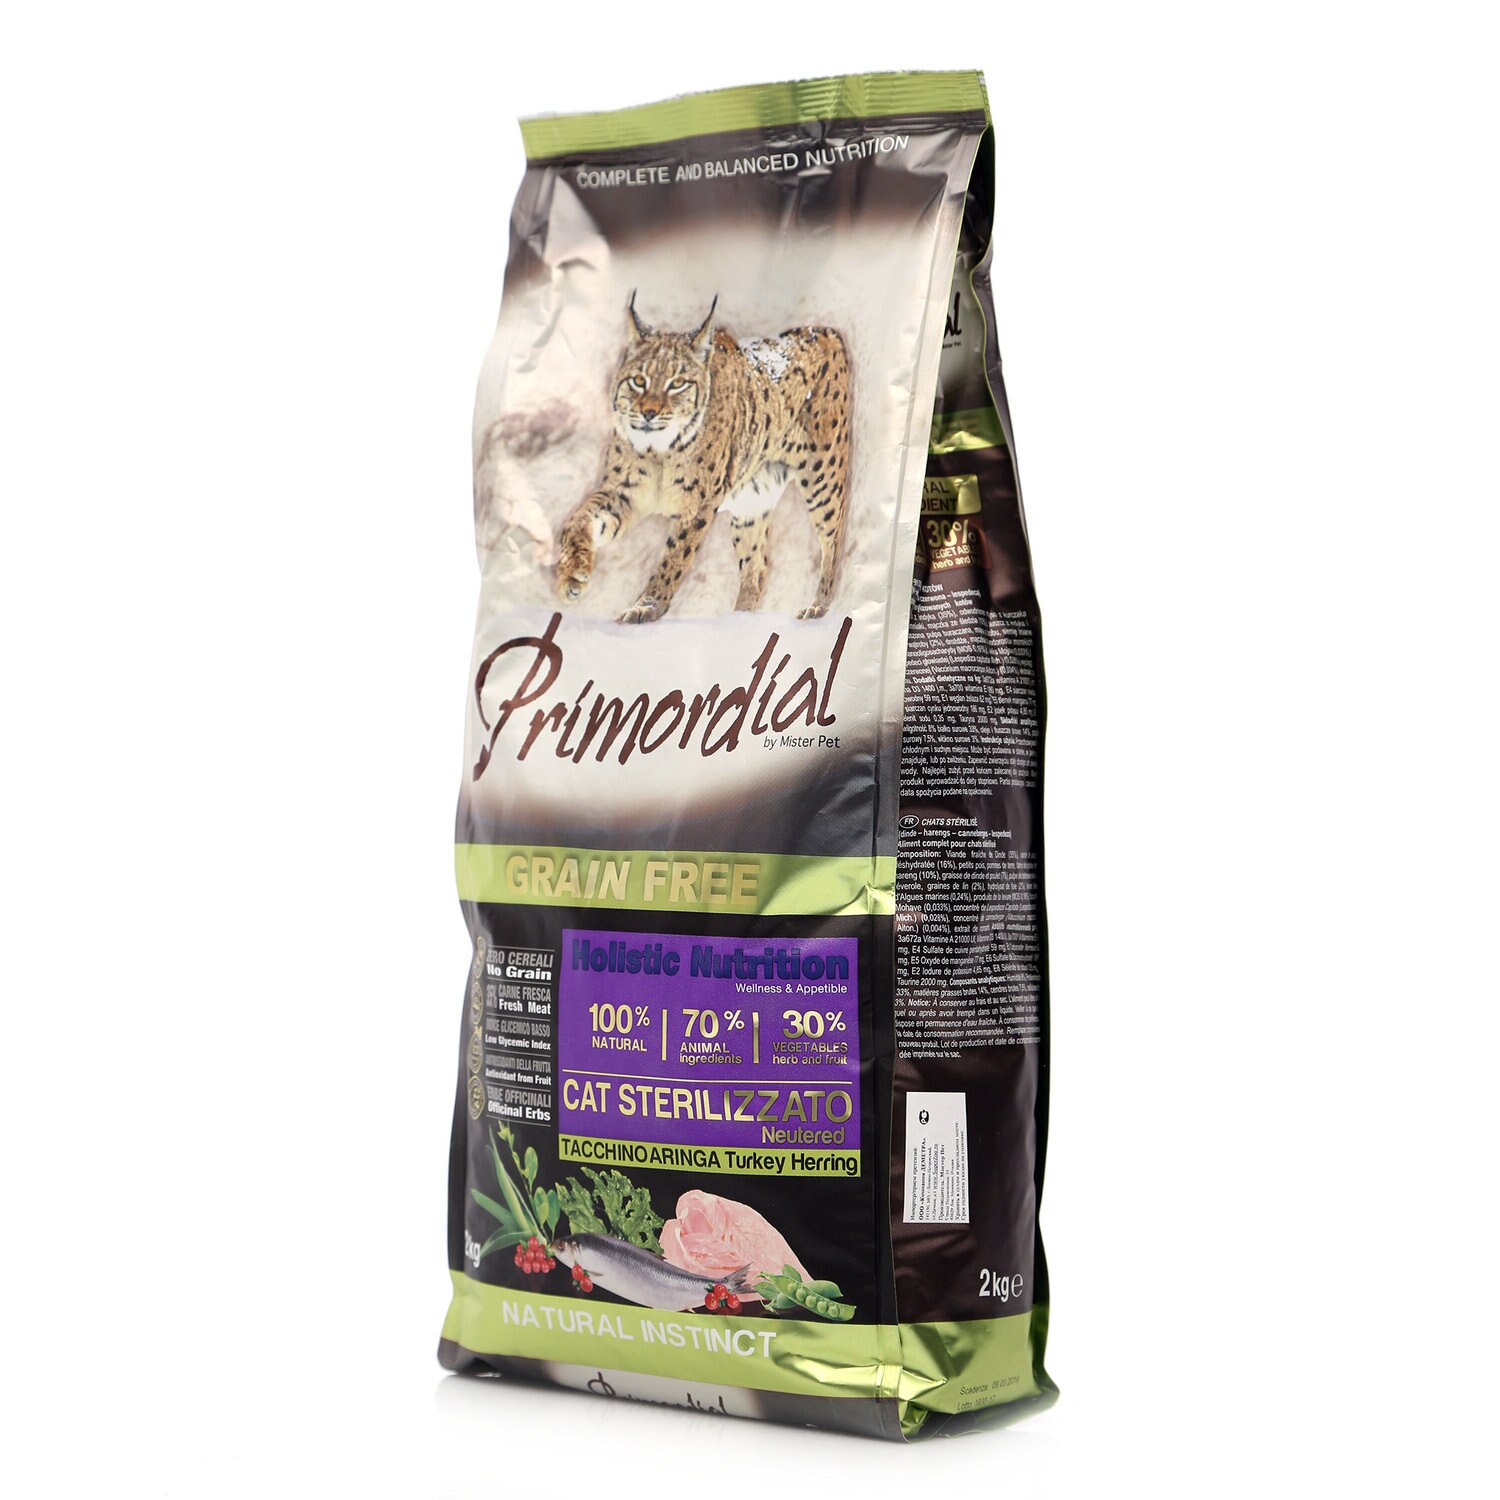 Сухой корм для кошек Primordial с индейкой и сельдью, 5 шт по 2 кг